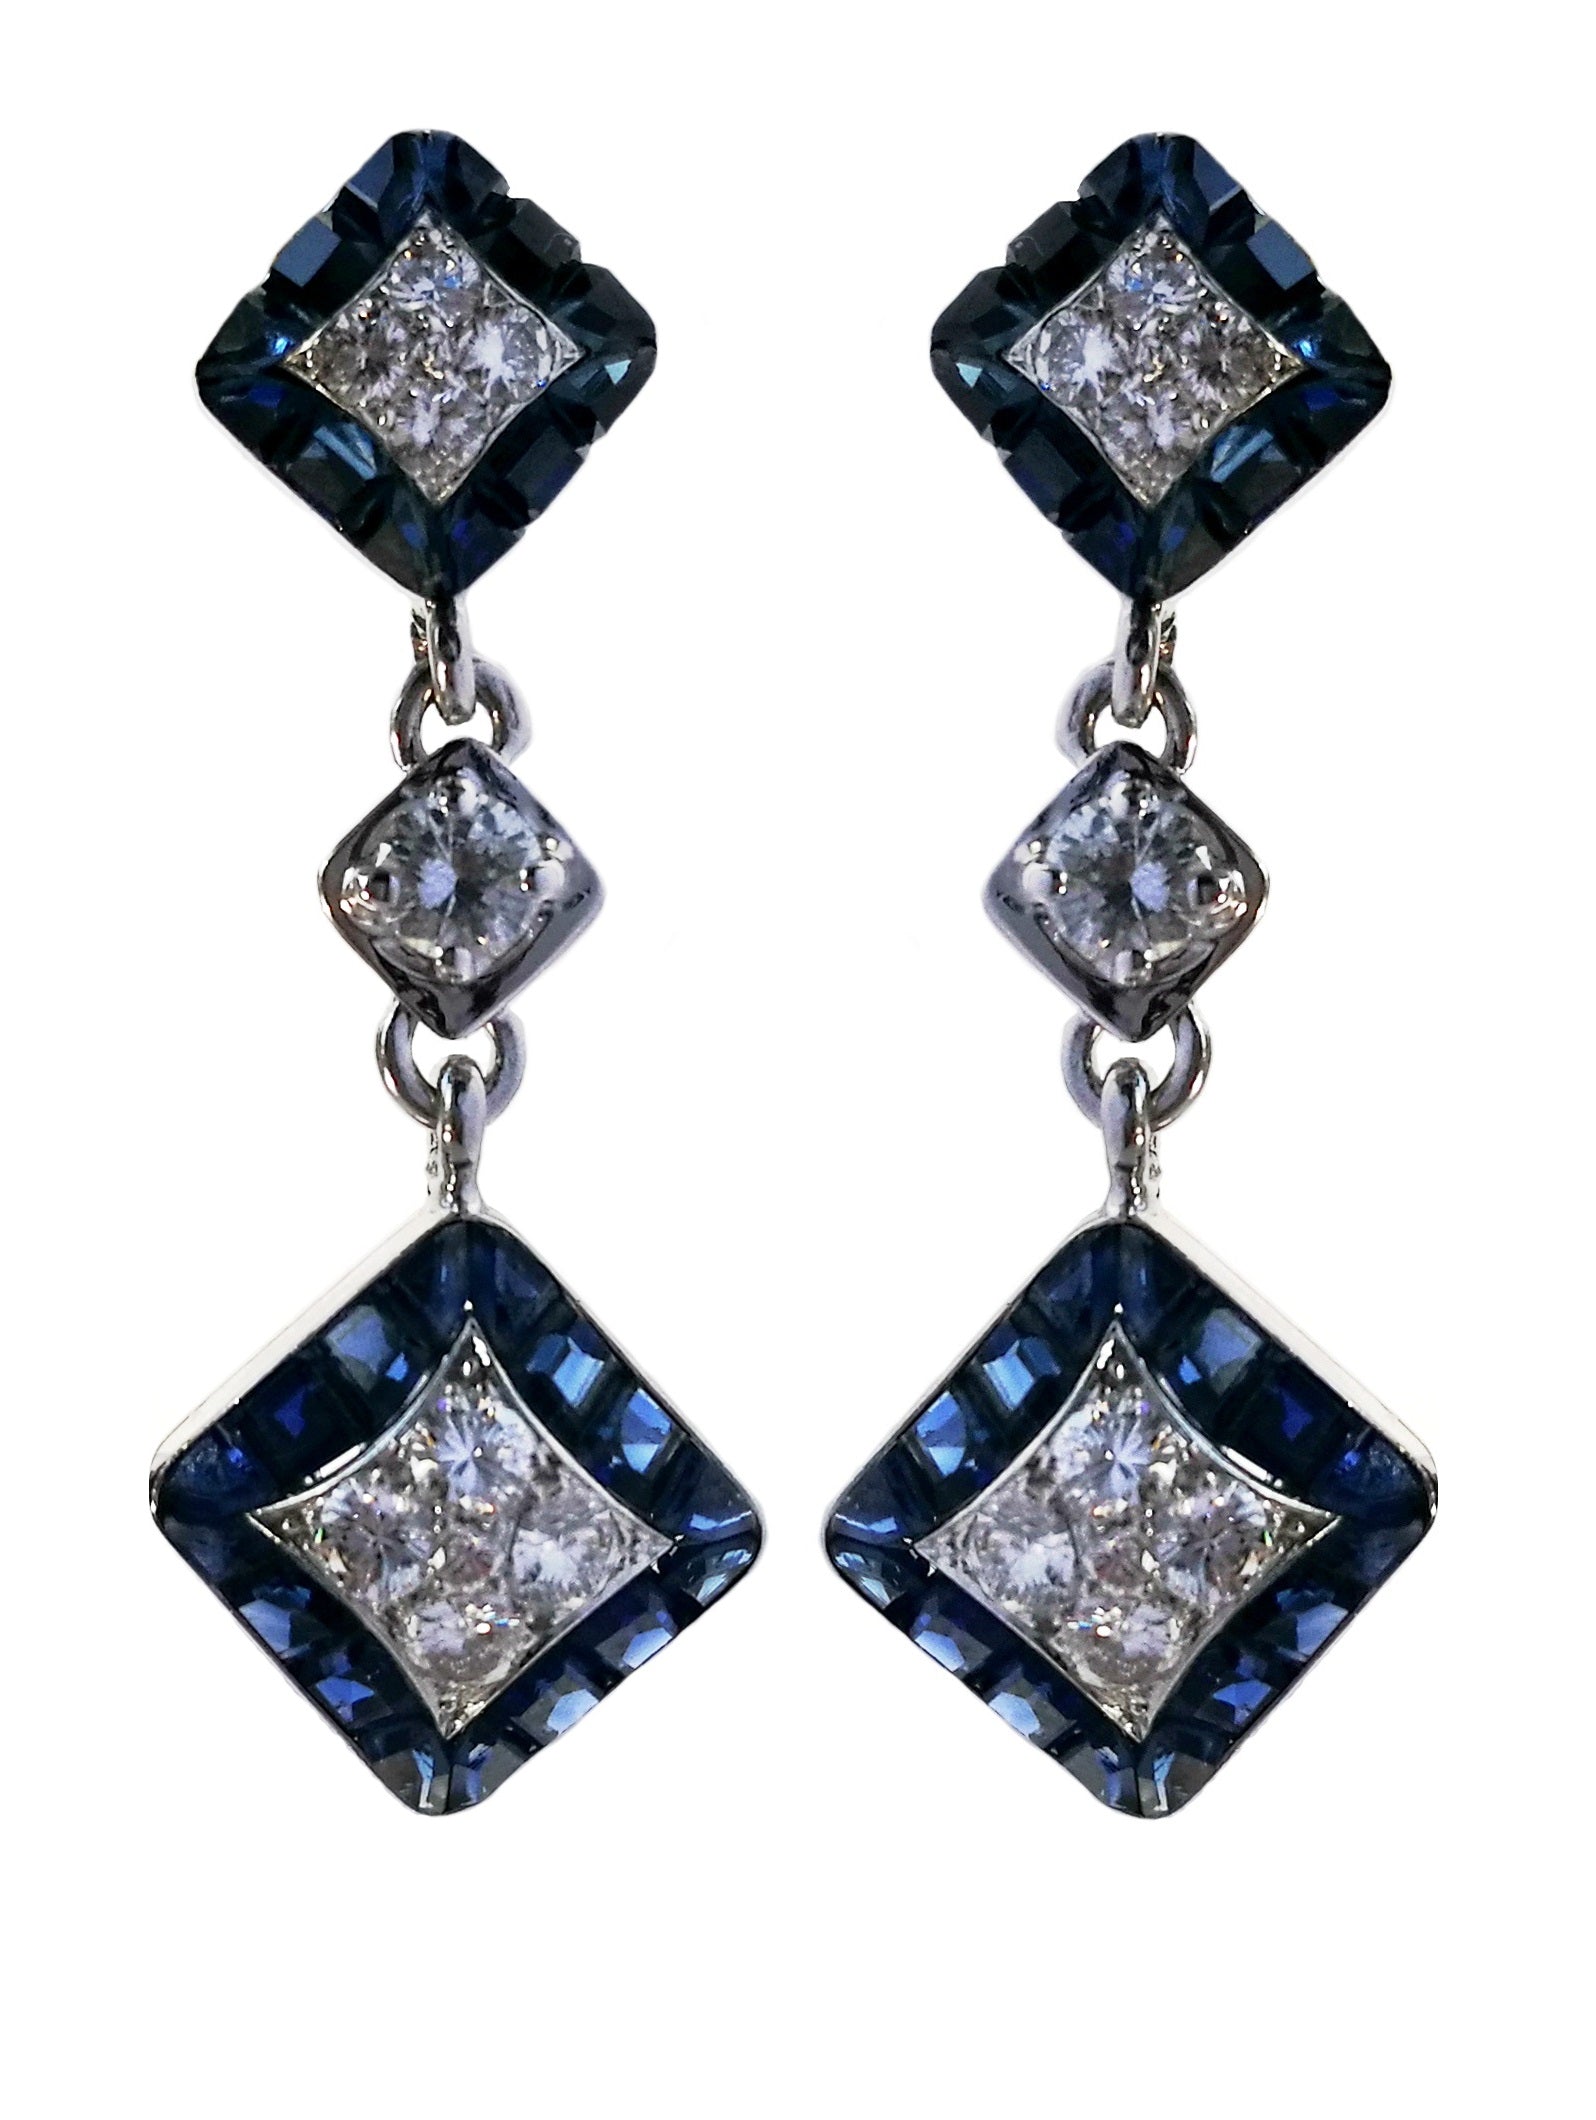 Vintage Van Cleef & Arpels 1960s Mystery Set Diamond, Sapphire & Platinum Earrings